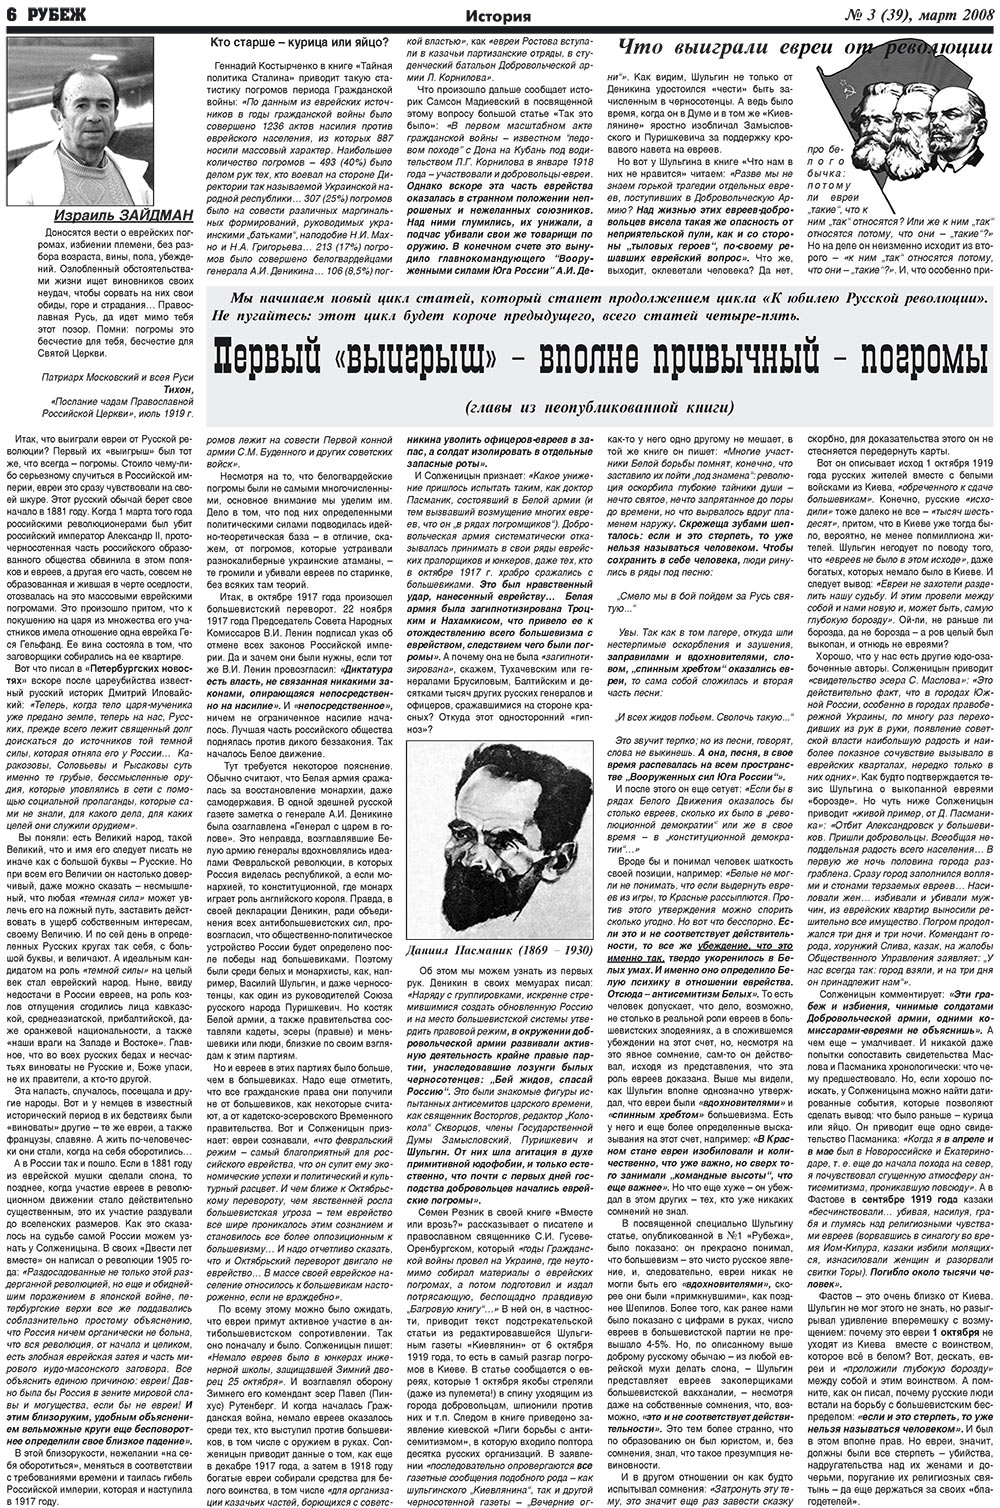 Рубеж (газета). 2008 год, номер 3, стр. 6